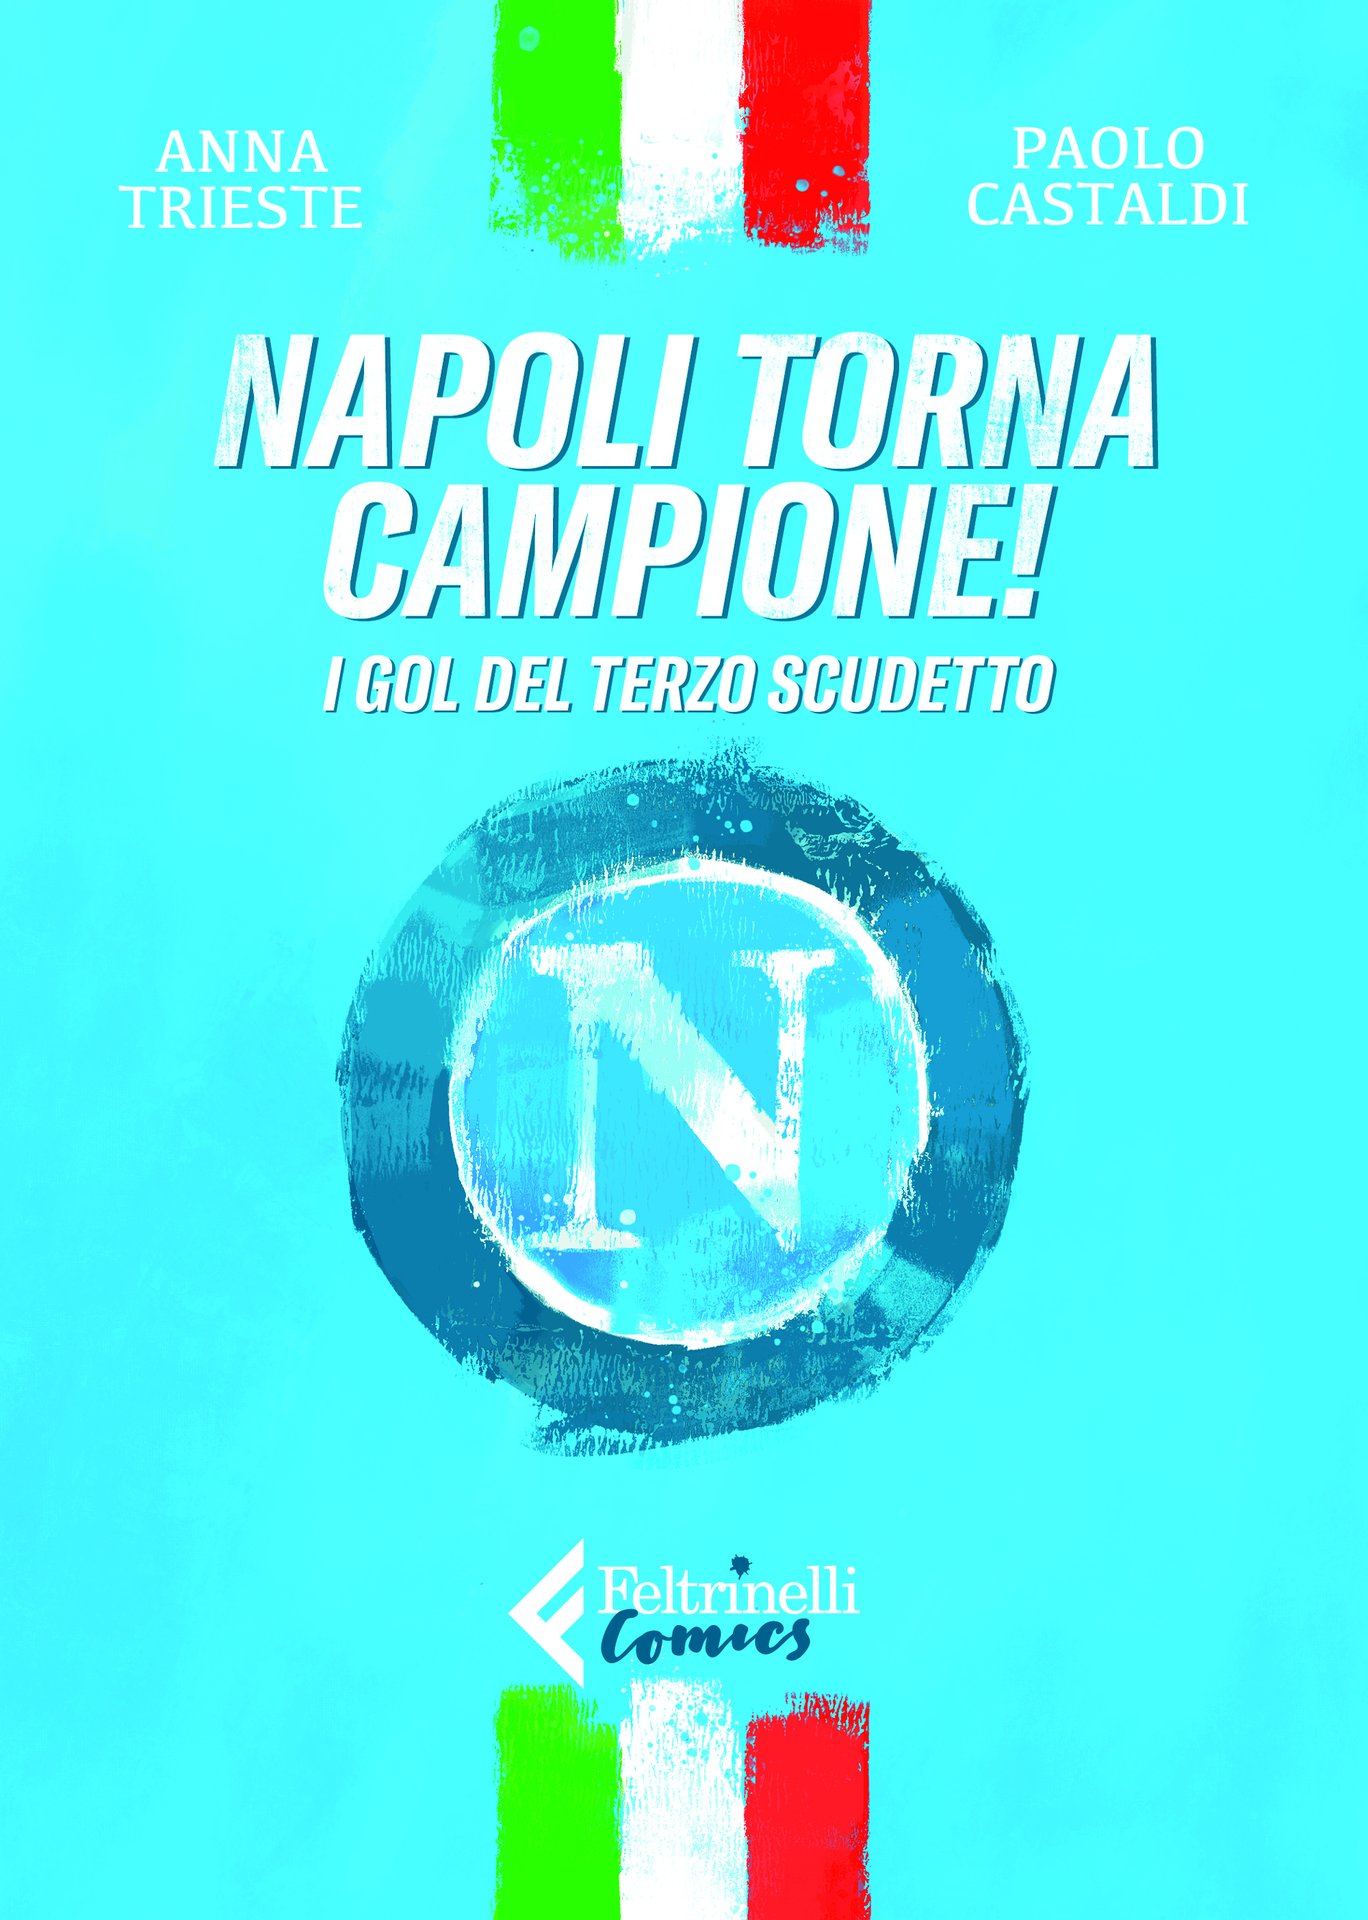 Anna Trieste e Paolo Castaldi presentano "Napoli torna campione" a Roma